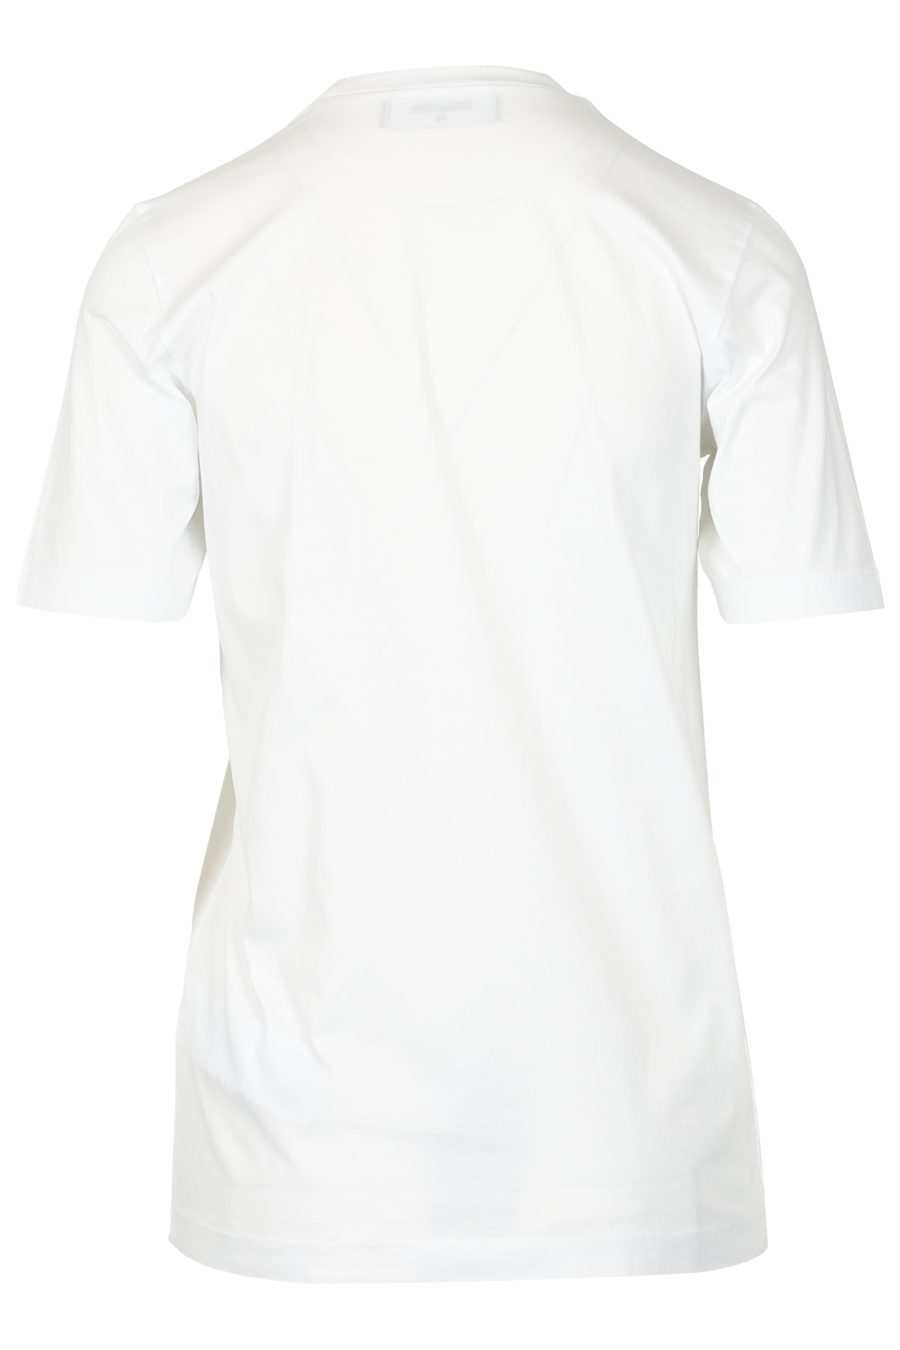 Ceresio Milano" white short-sleeved T-shirt - IMG 3273